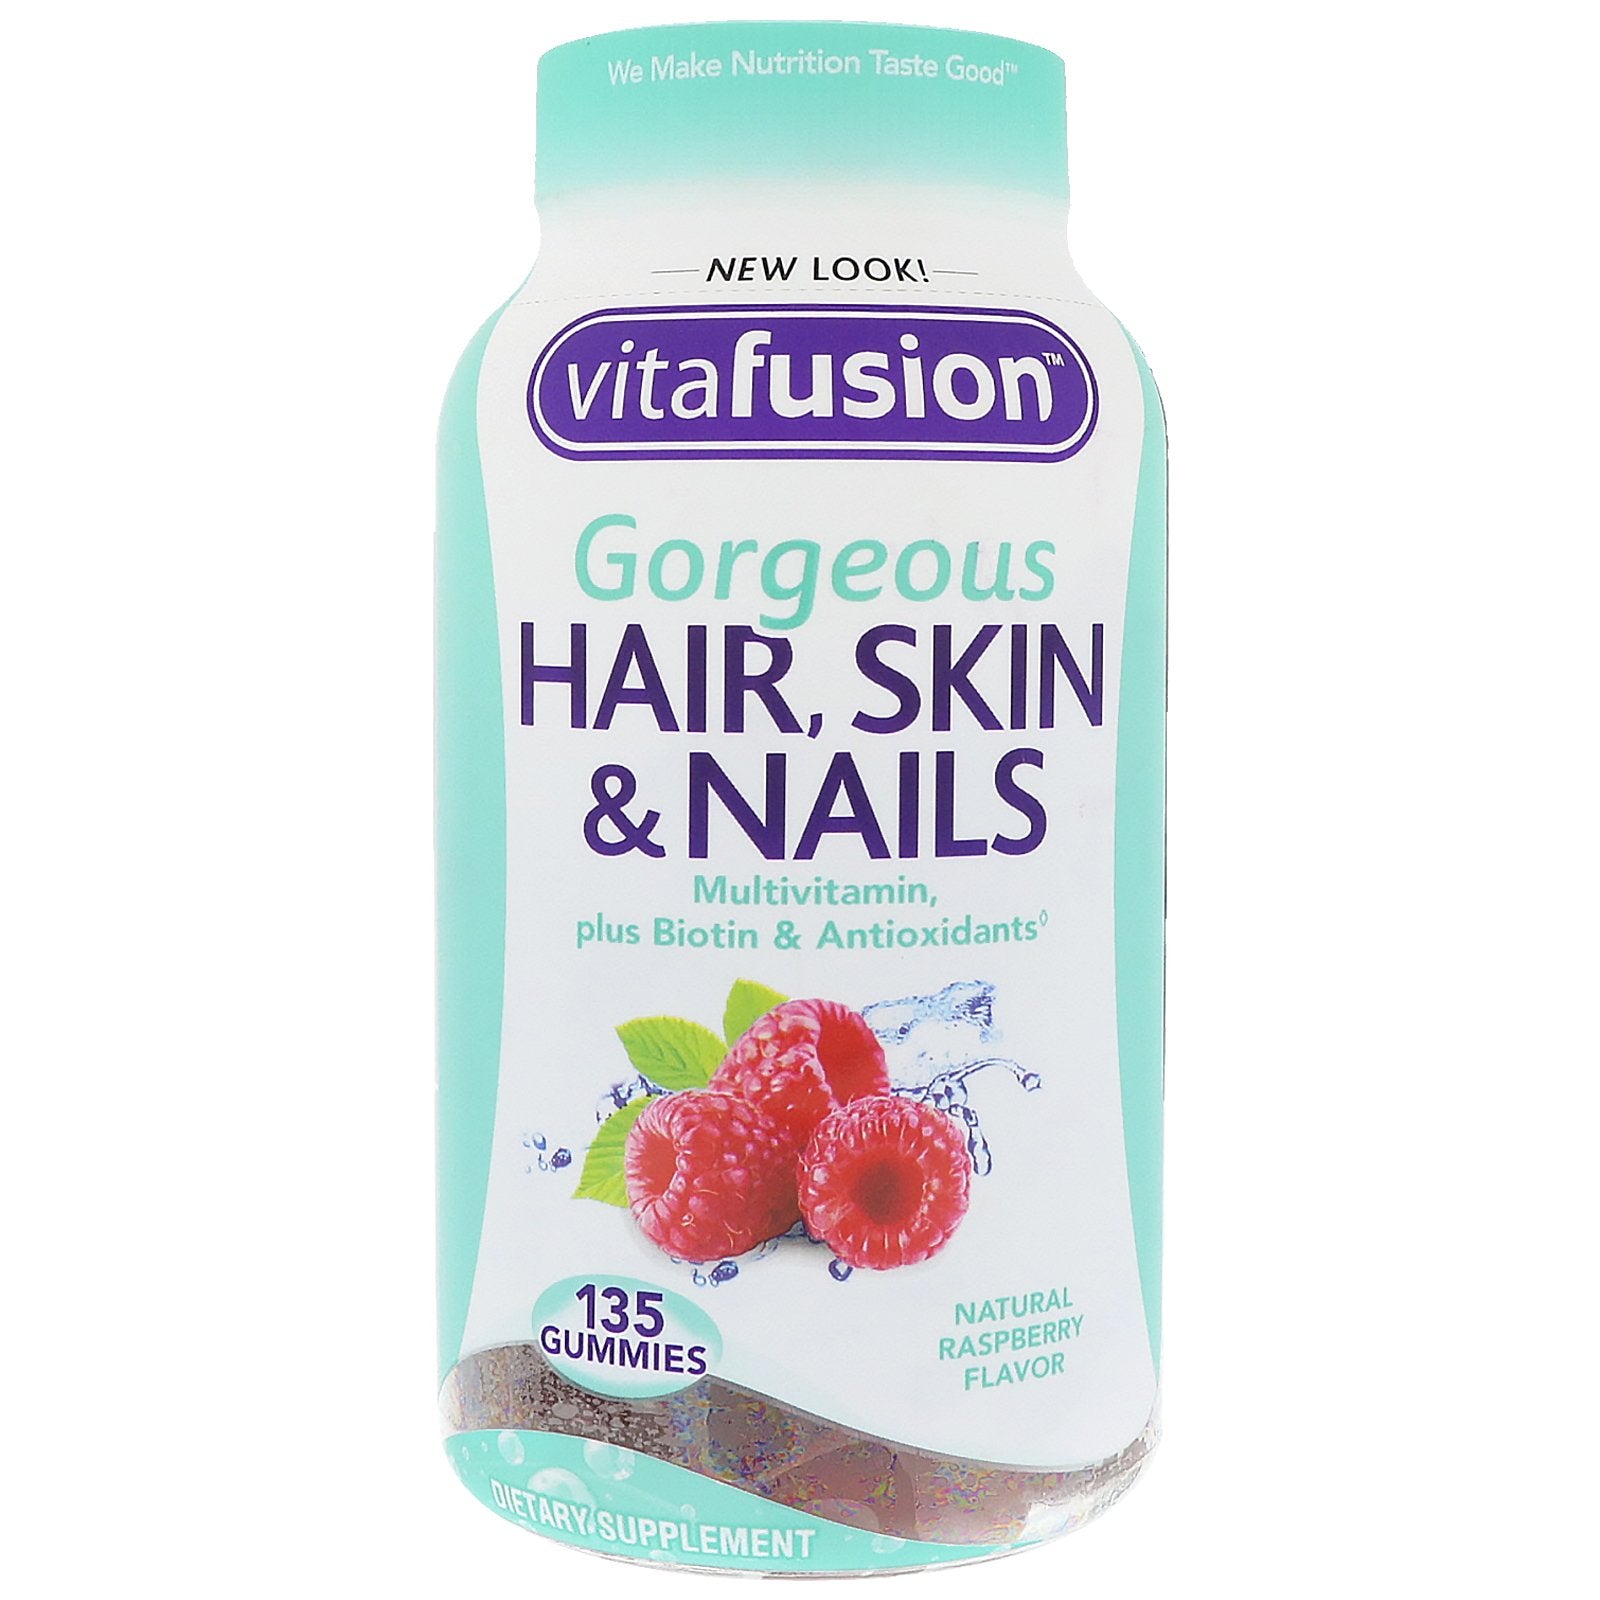 VitaFusion, Gorgeous Hair, Skin & Nails Multivitamin, Natural Raspberry Flavor, 135 Gummies